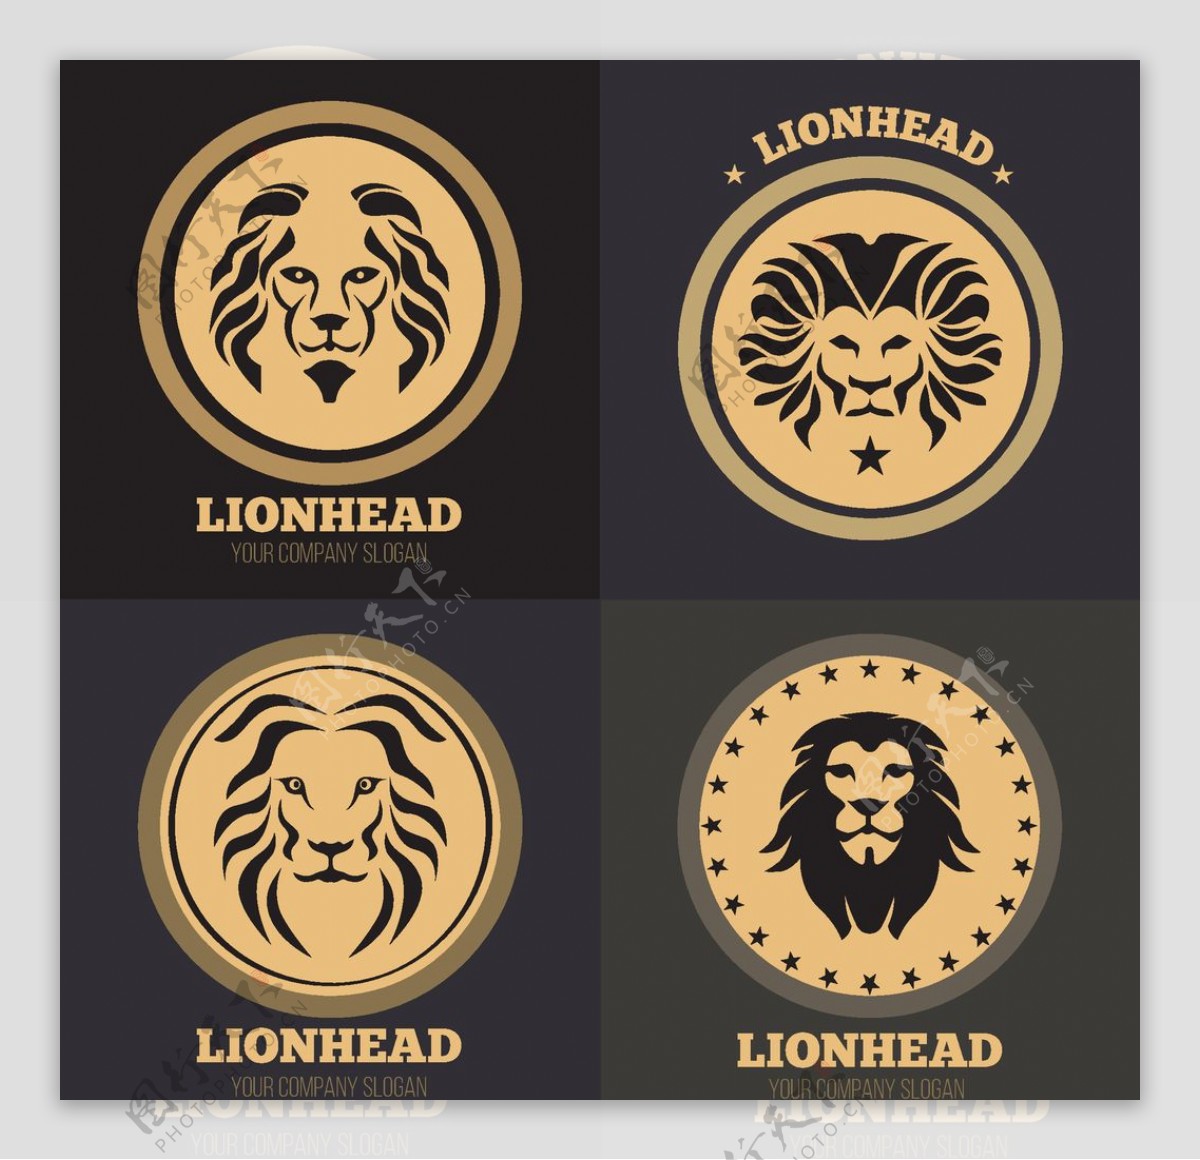 狮子图标